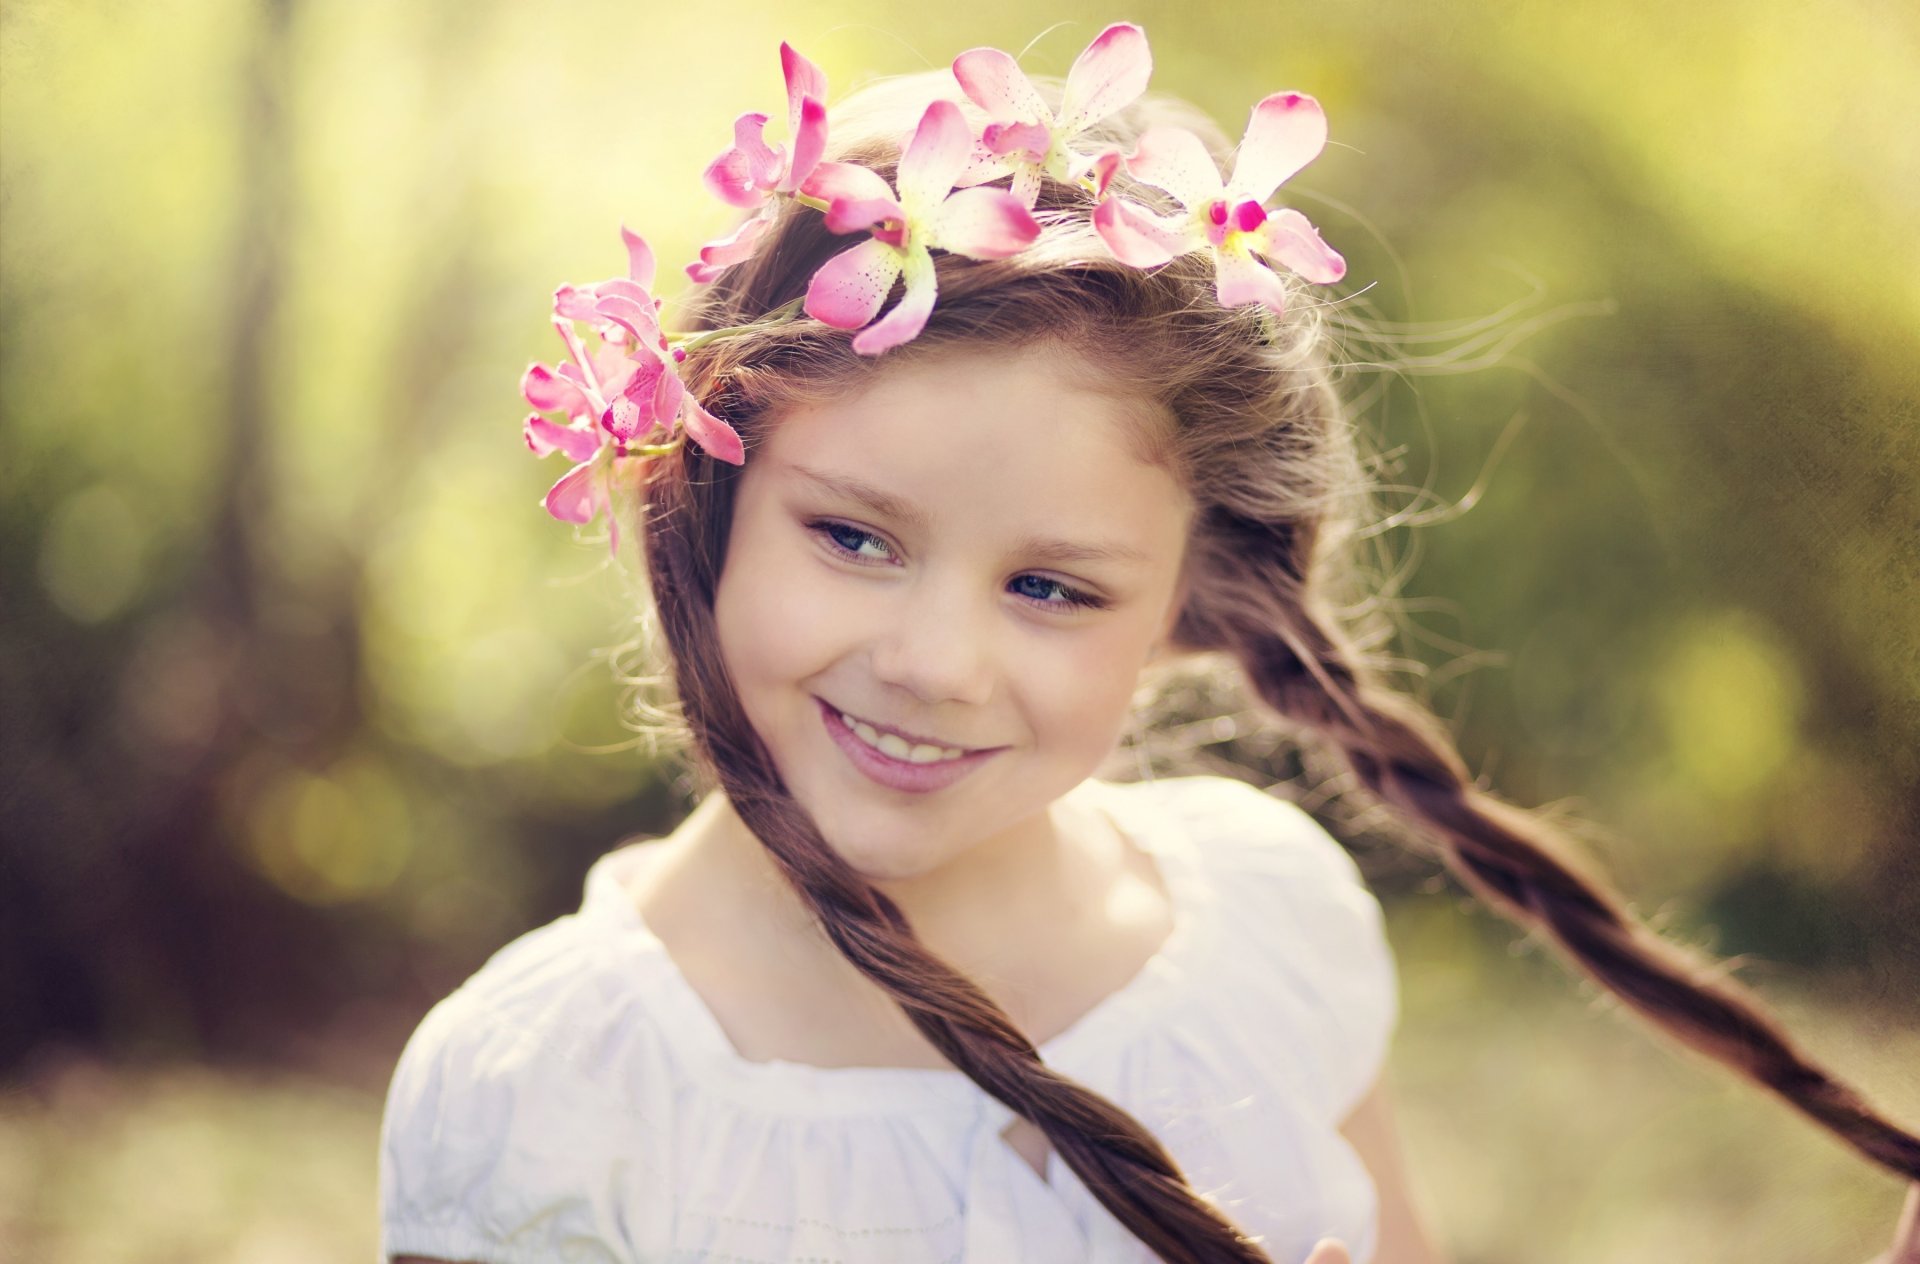 humeur fille enfants sourire regard couronne couronne fleurs fleurs tresses mouvement visage flou bokeh fond fond d écran écran large plein écran écran large écran large